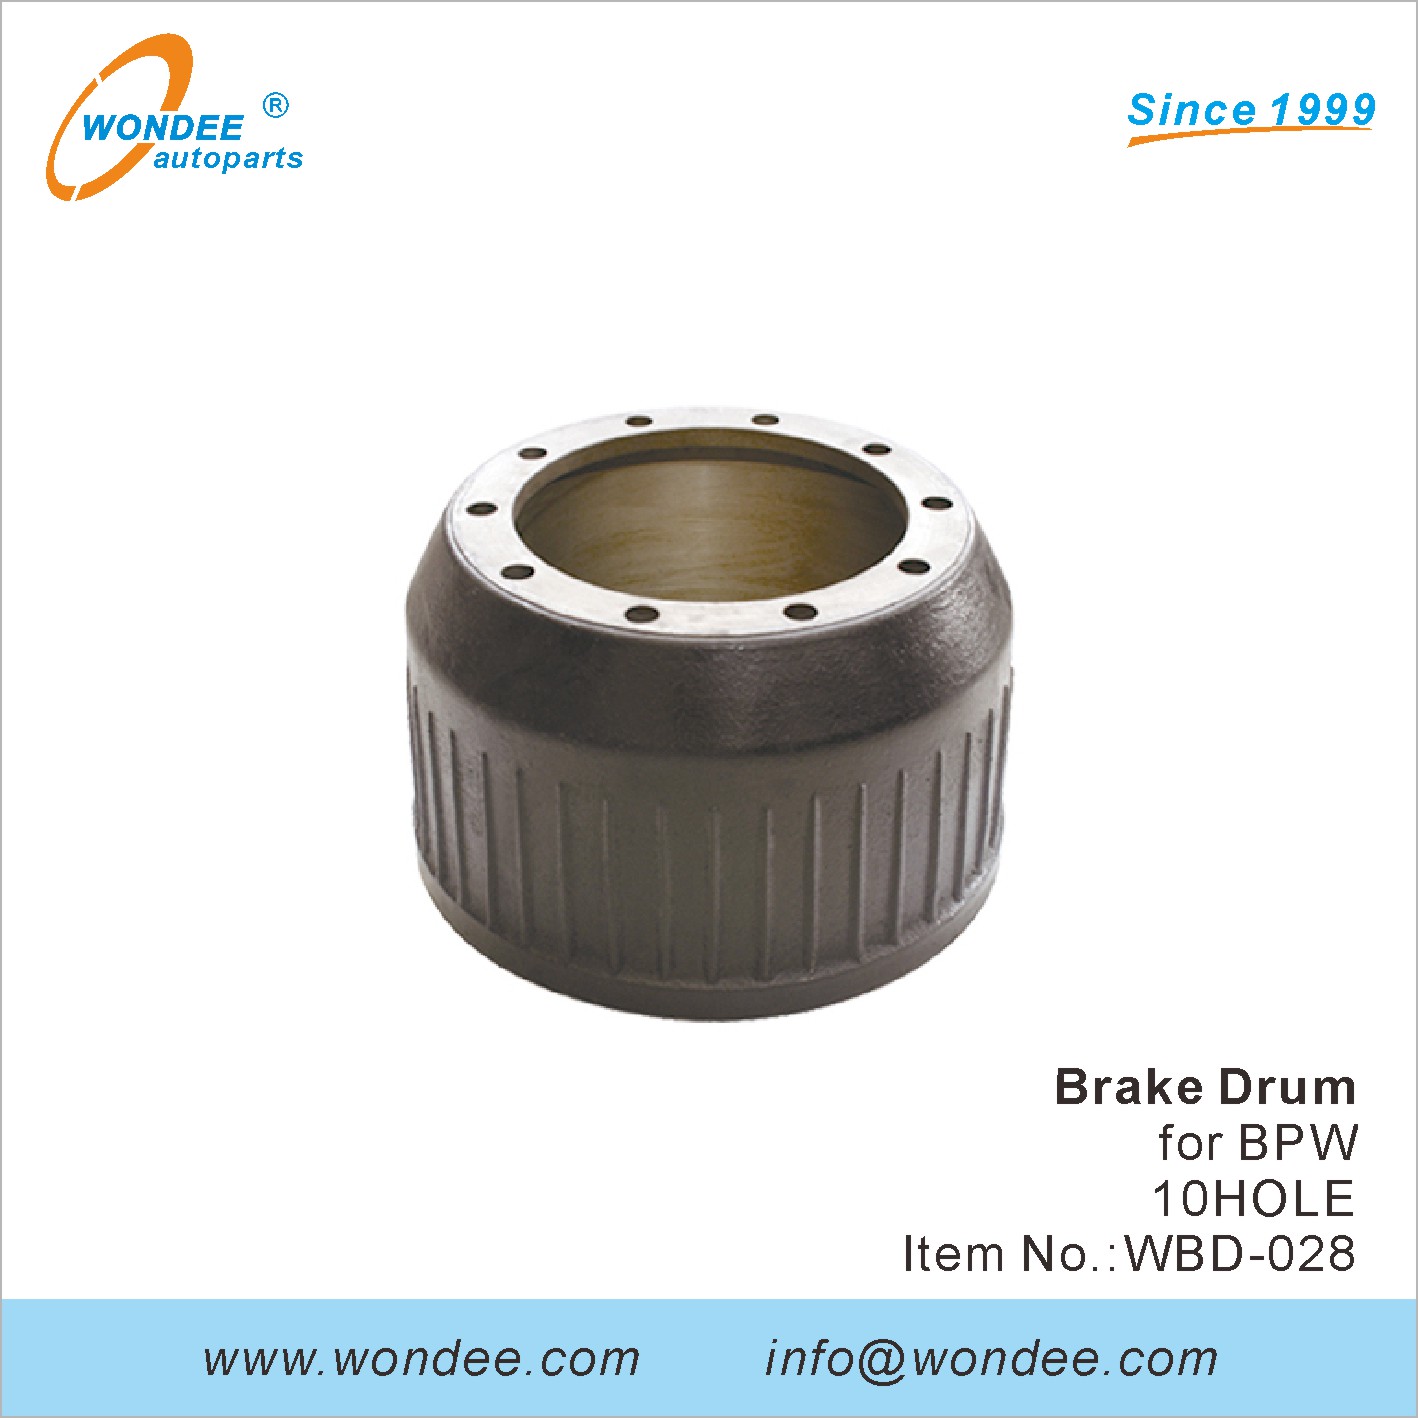 WONDEE brake drum (28)